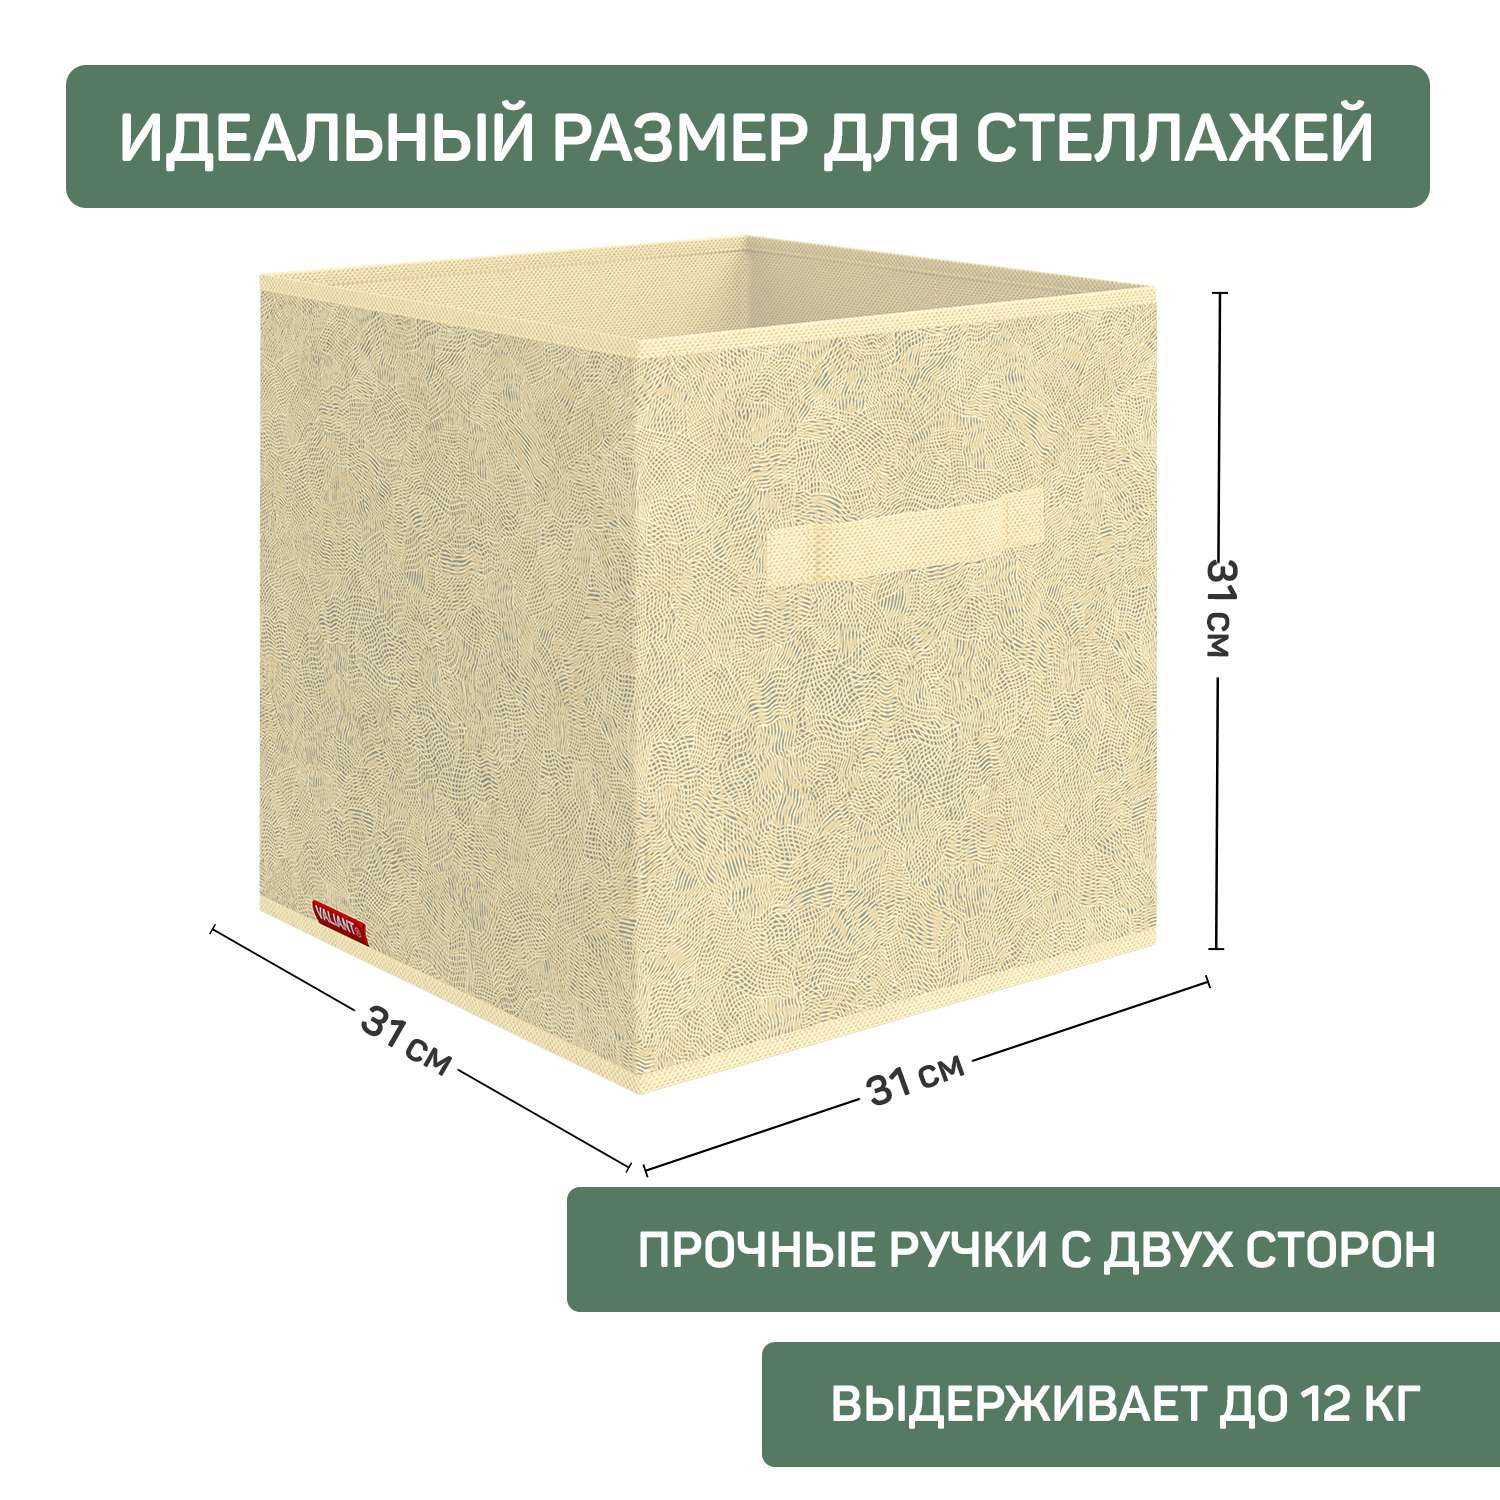 Короб стеллажный VALIANT без крышки 31*31*31 см набор 3 шт - фото 2